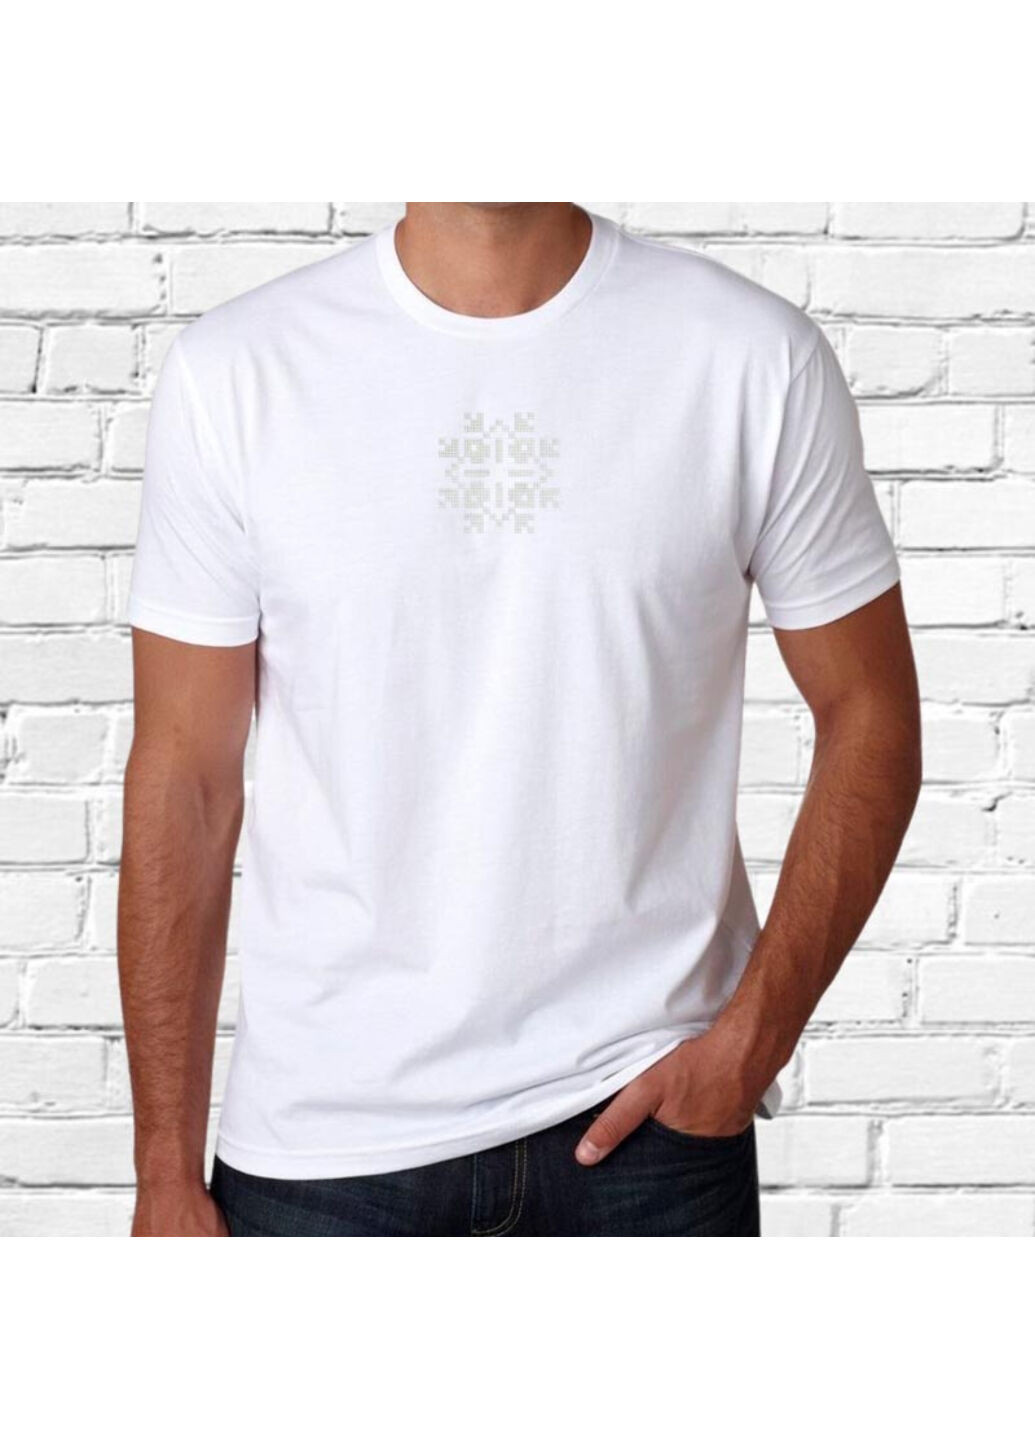 Біла футболка етно з вишивкою 01-22 чоловіча білий s No Brand